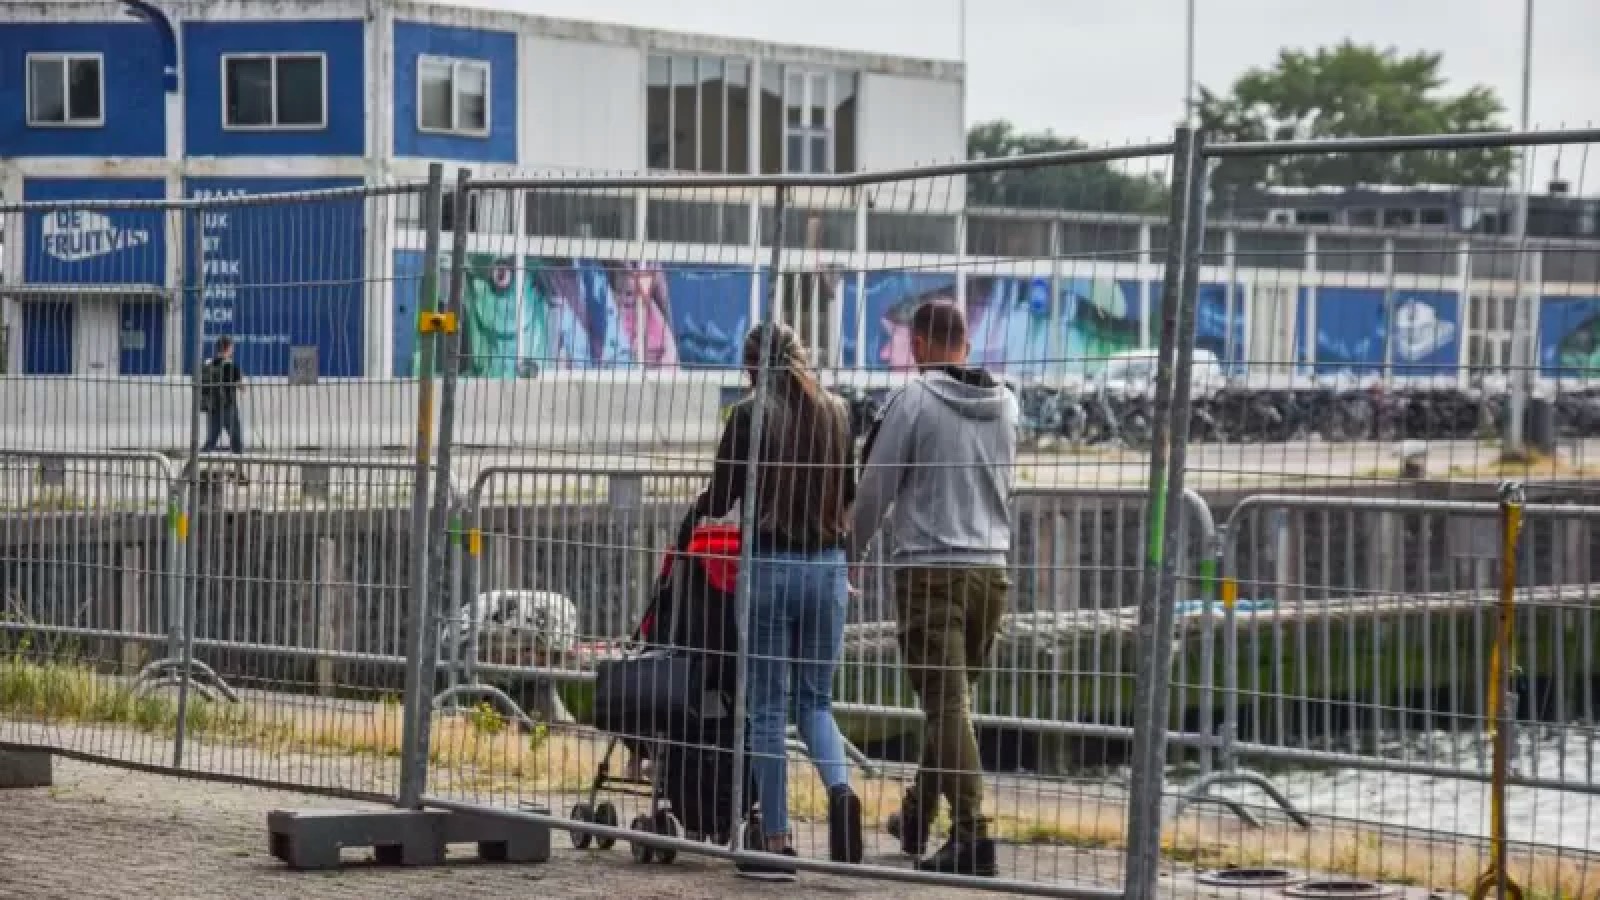 Hollanda: Günde 250 kişinin iltica başvurusu yaptığı ülkede sığınma merkezlerinde yer kalmadı